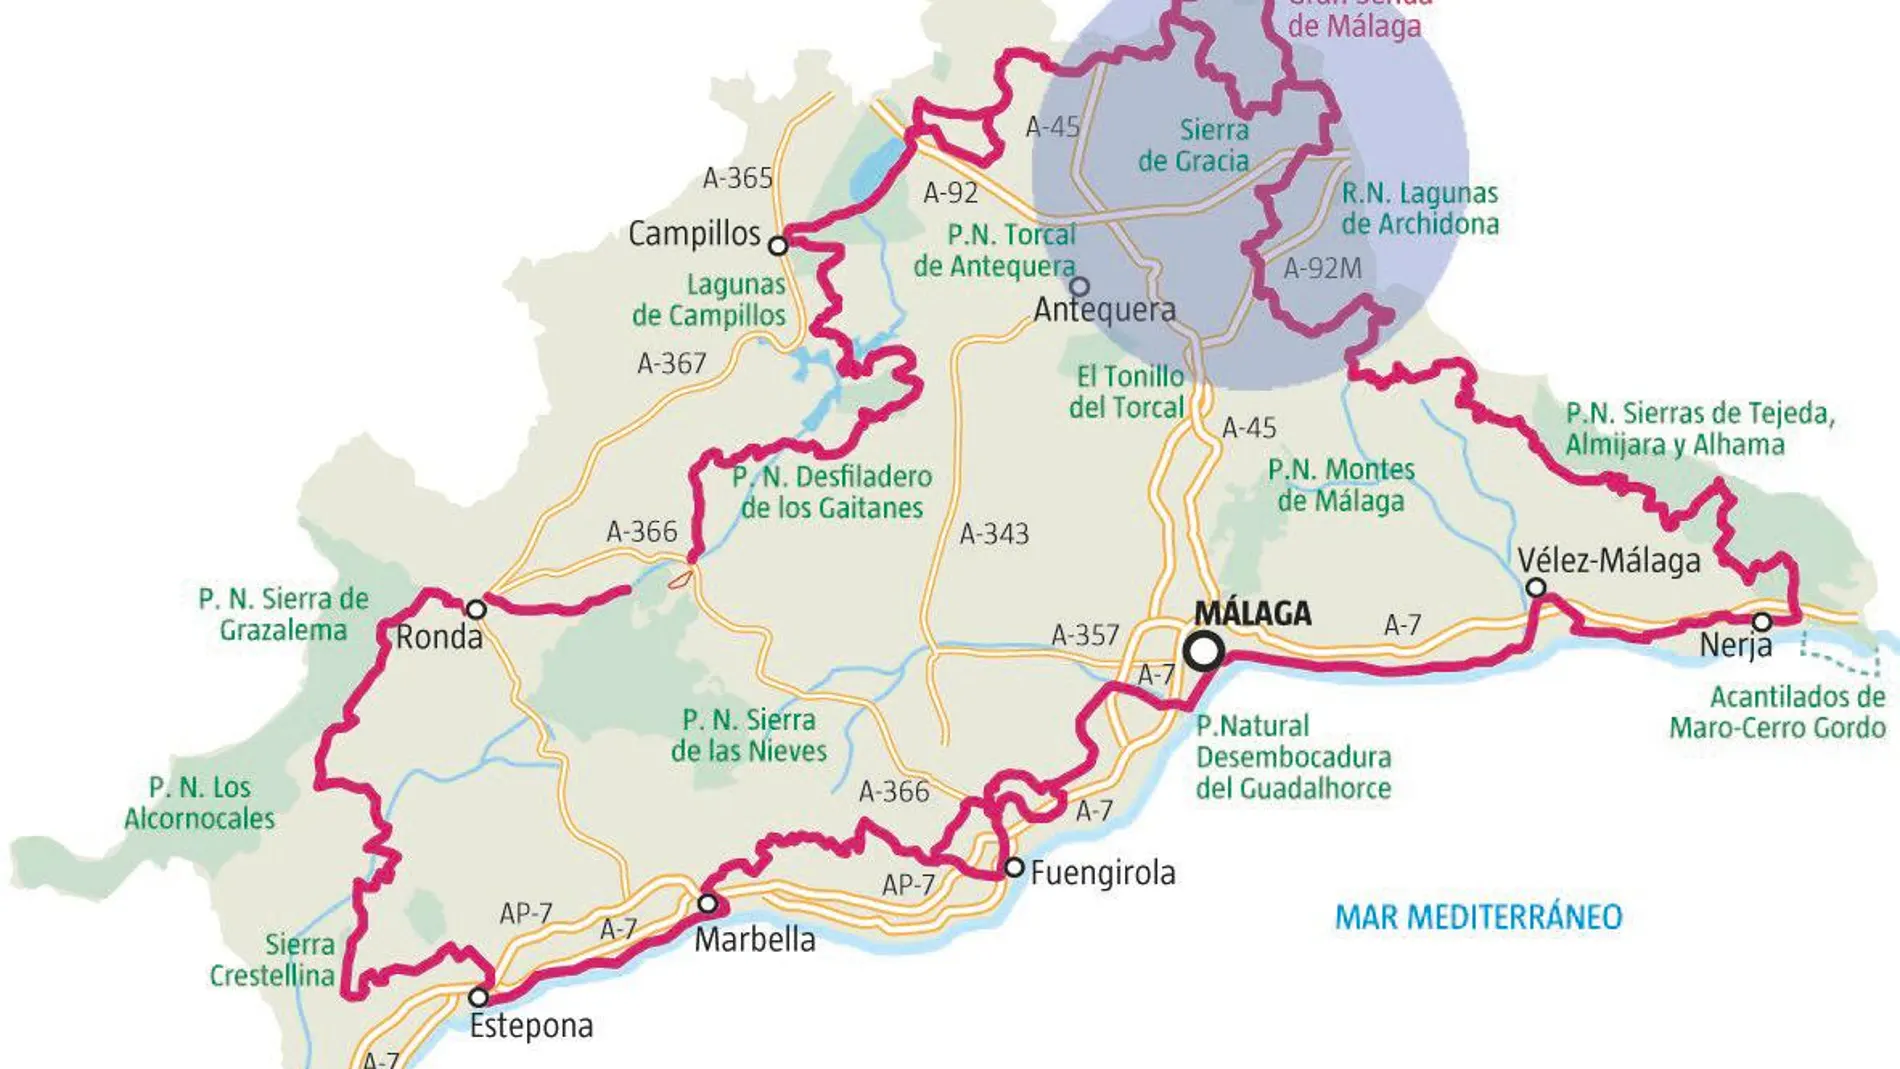 Un buen punto de inicio de esta ruta es Villanueva del Rosario y el plan es hacer un recorrido por la cabecera del río Guadalhorce y sus afluentes